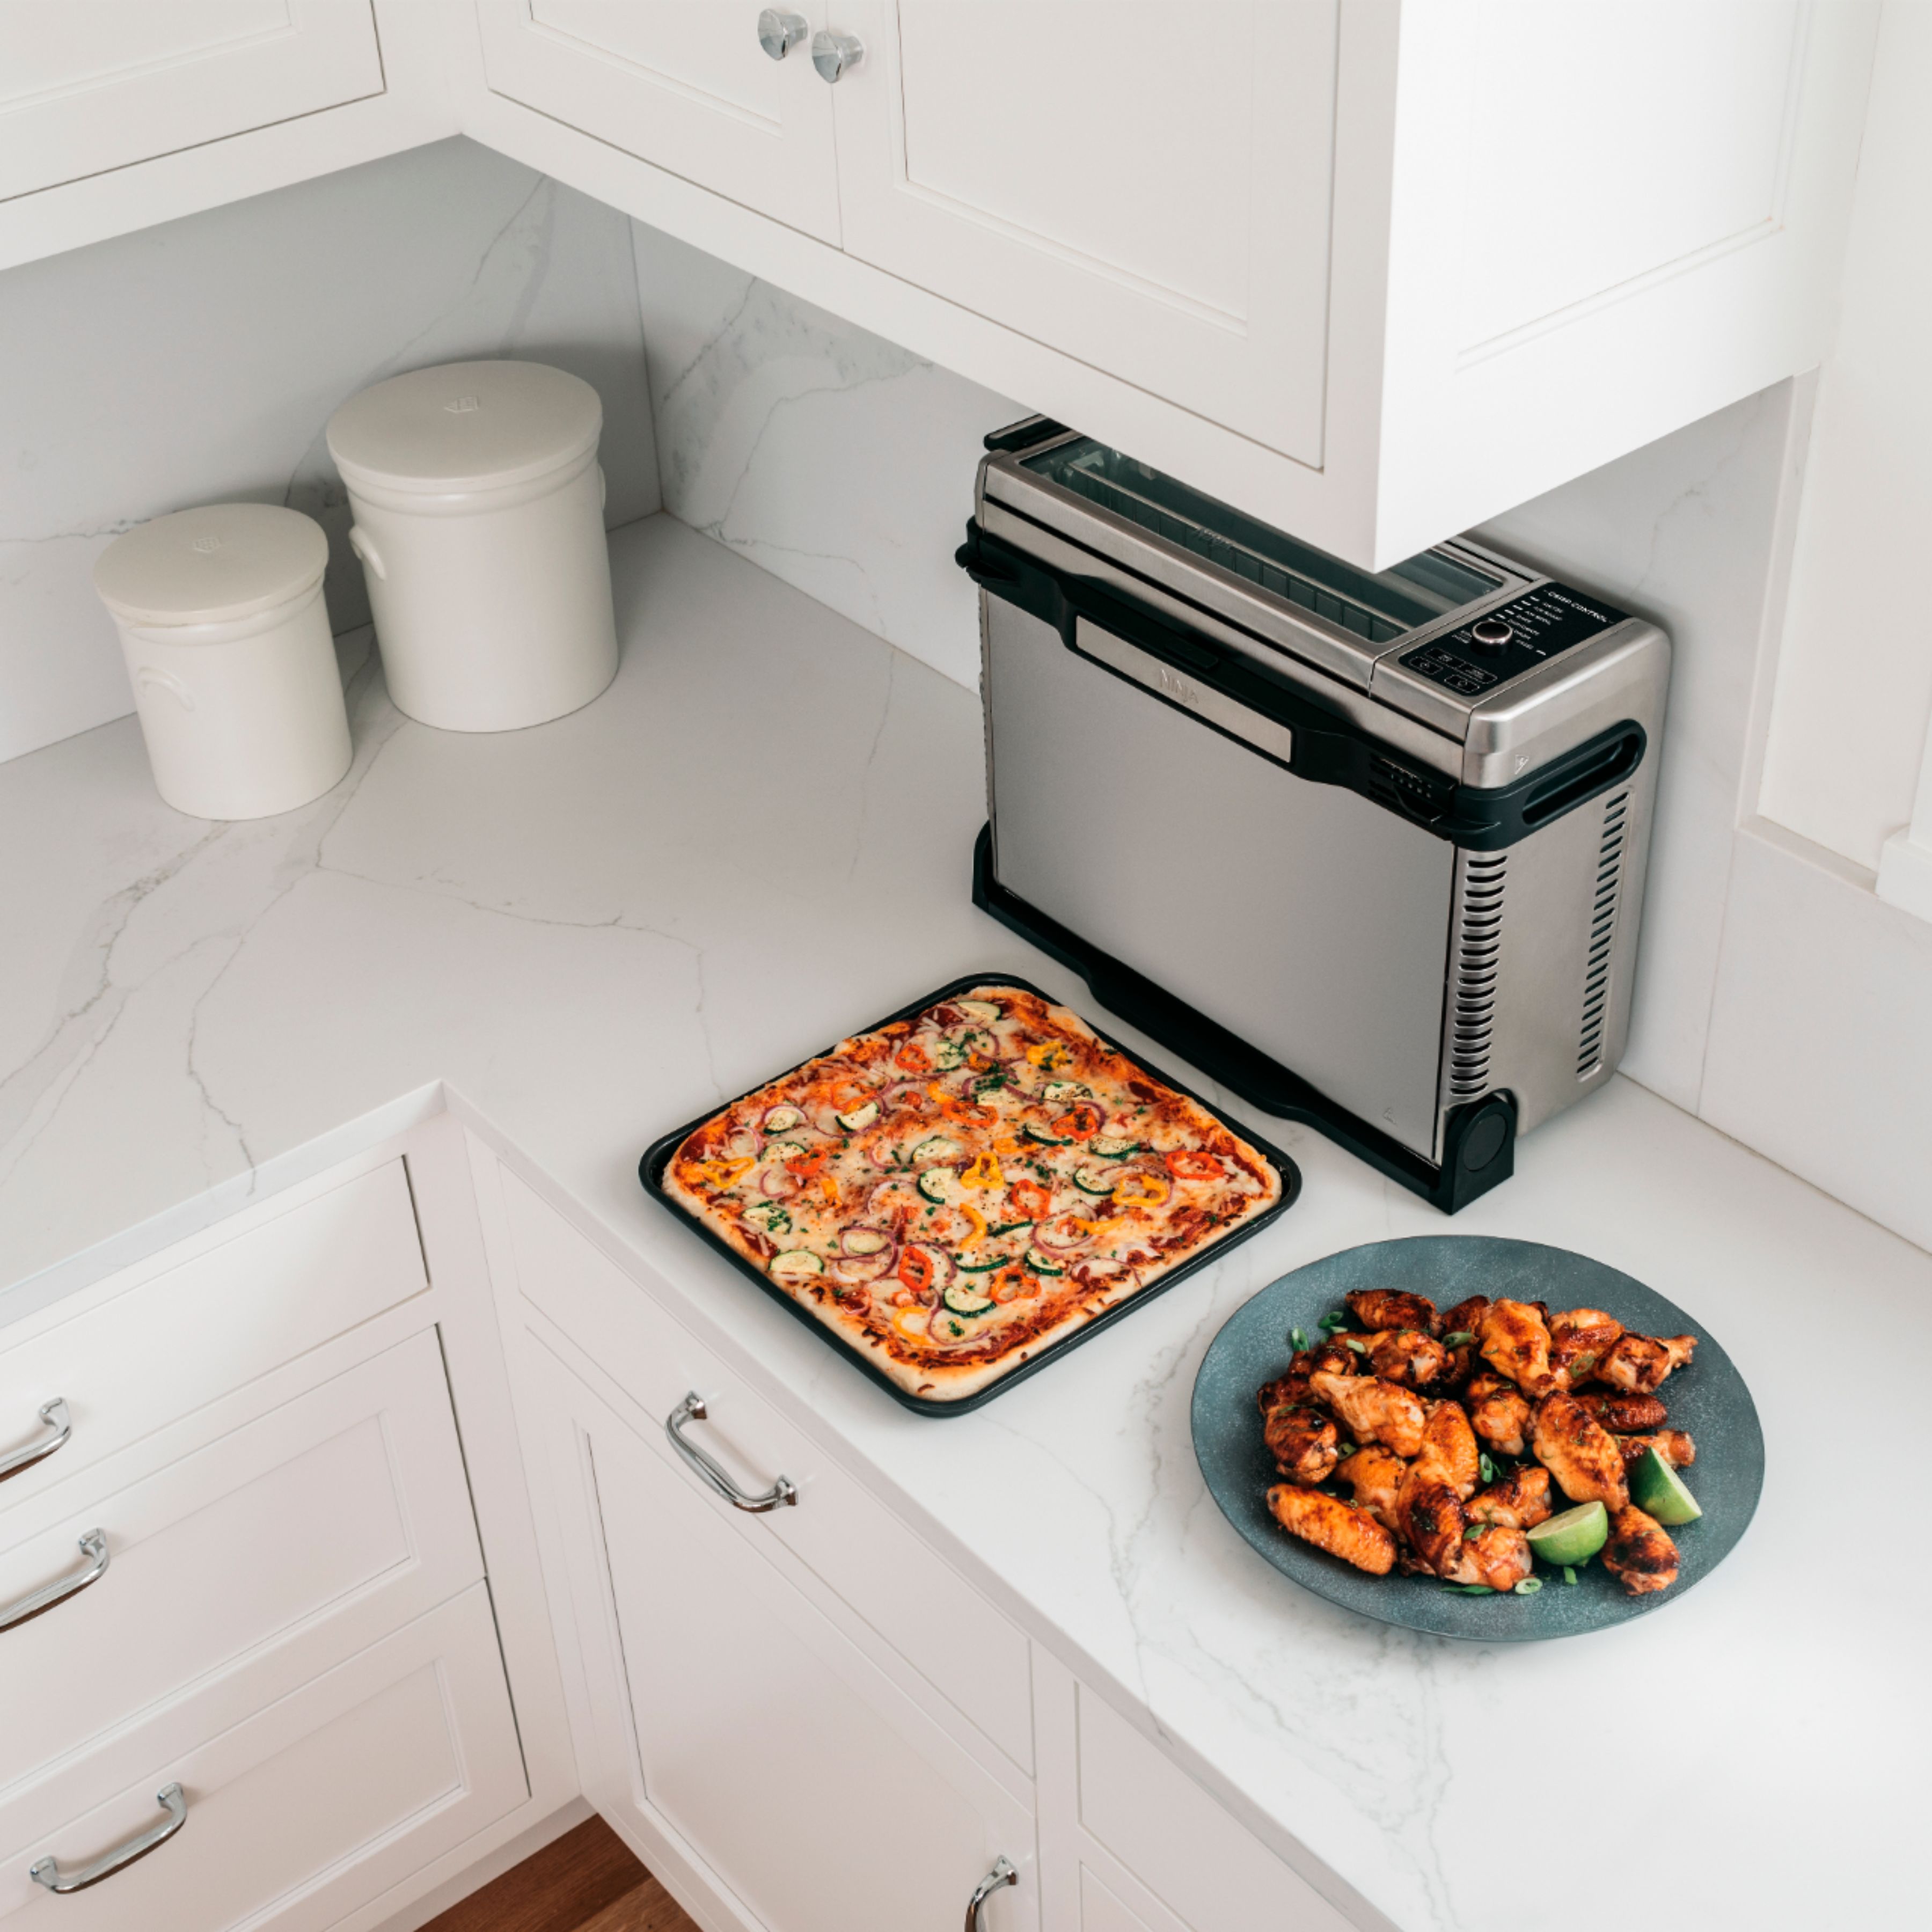 Ninja Foodi 8-in-1 Digital Air Fry Oven, Toaster, Flip-Away Storage,  Dehydrate, Keep Warm Stainless Steel/Black SP101 - Best Buy